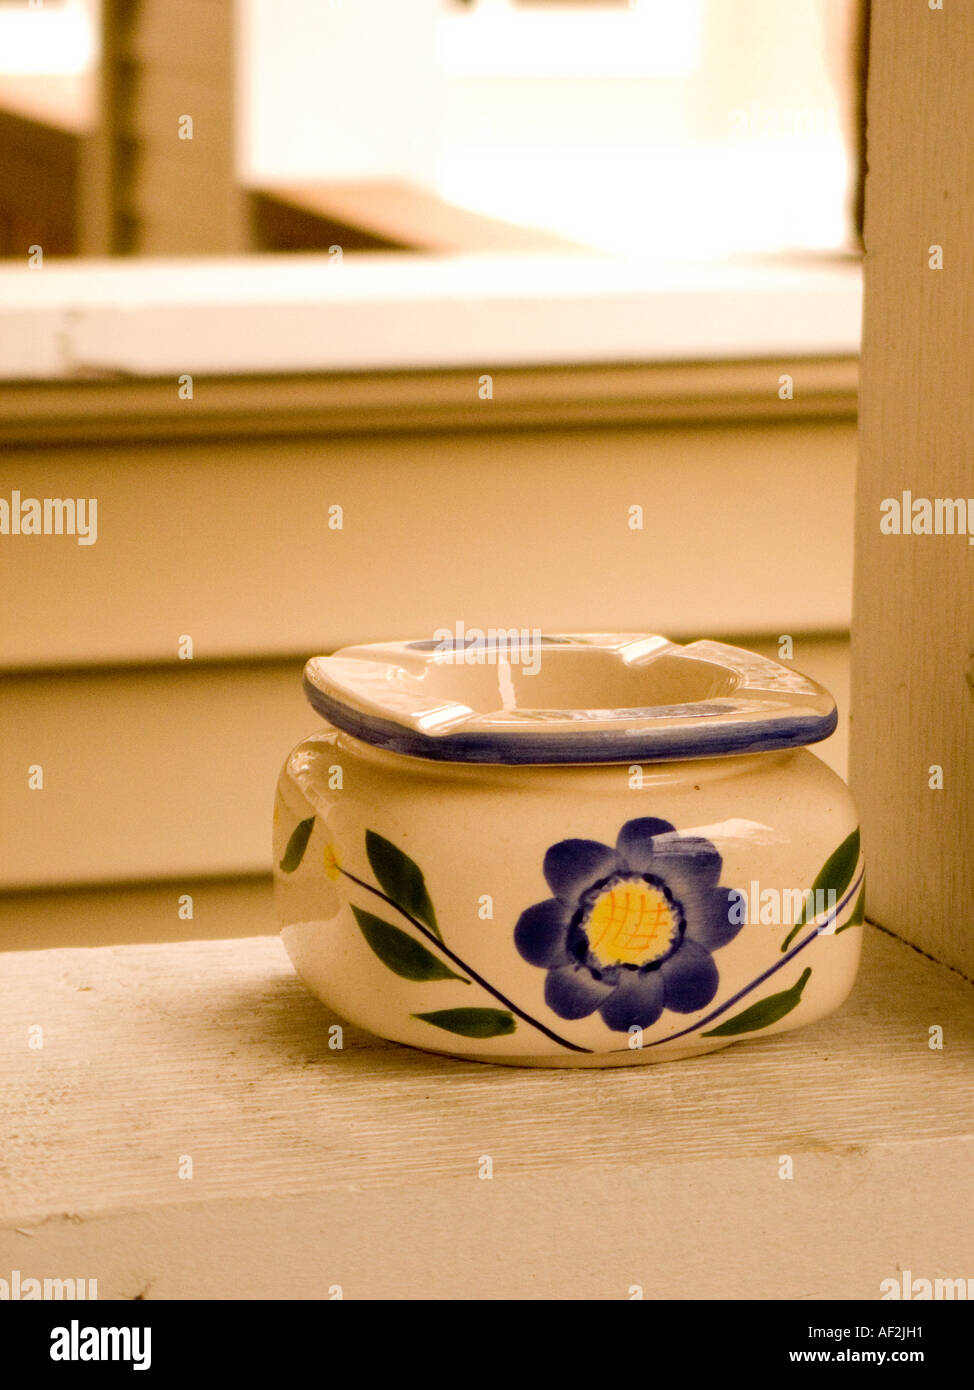 Aschenbecher am Balkon Leiste Stockfotografie - Alamy